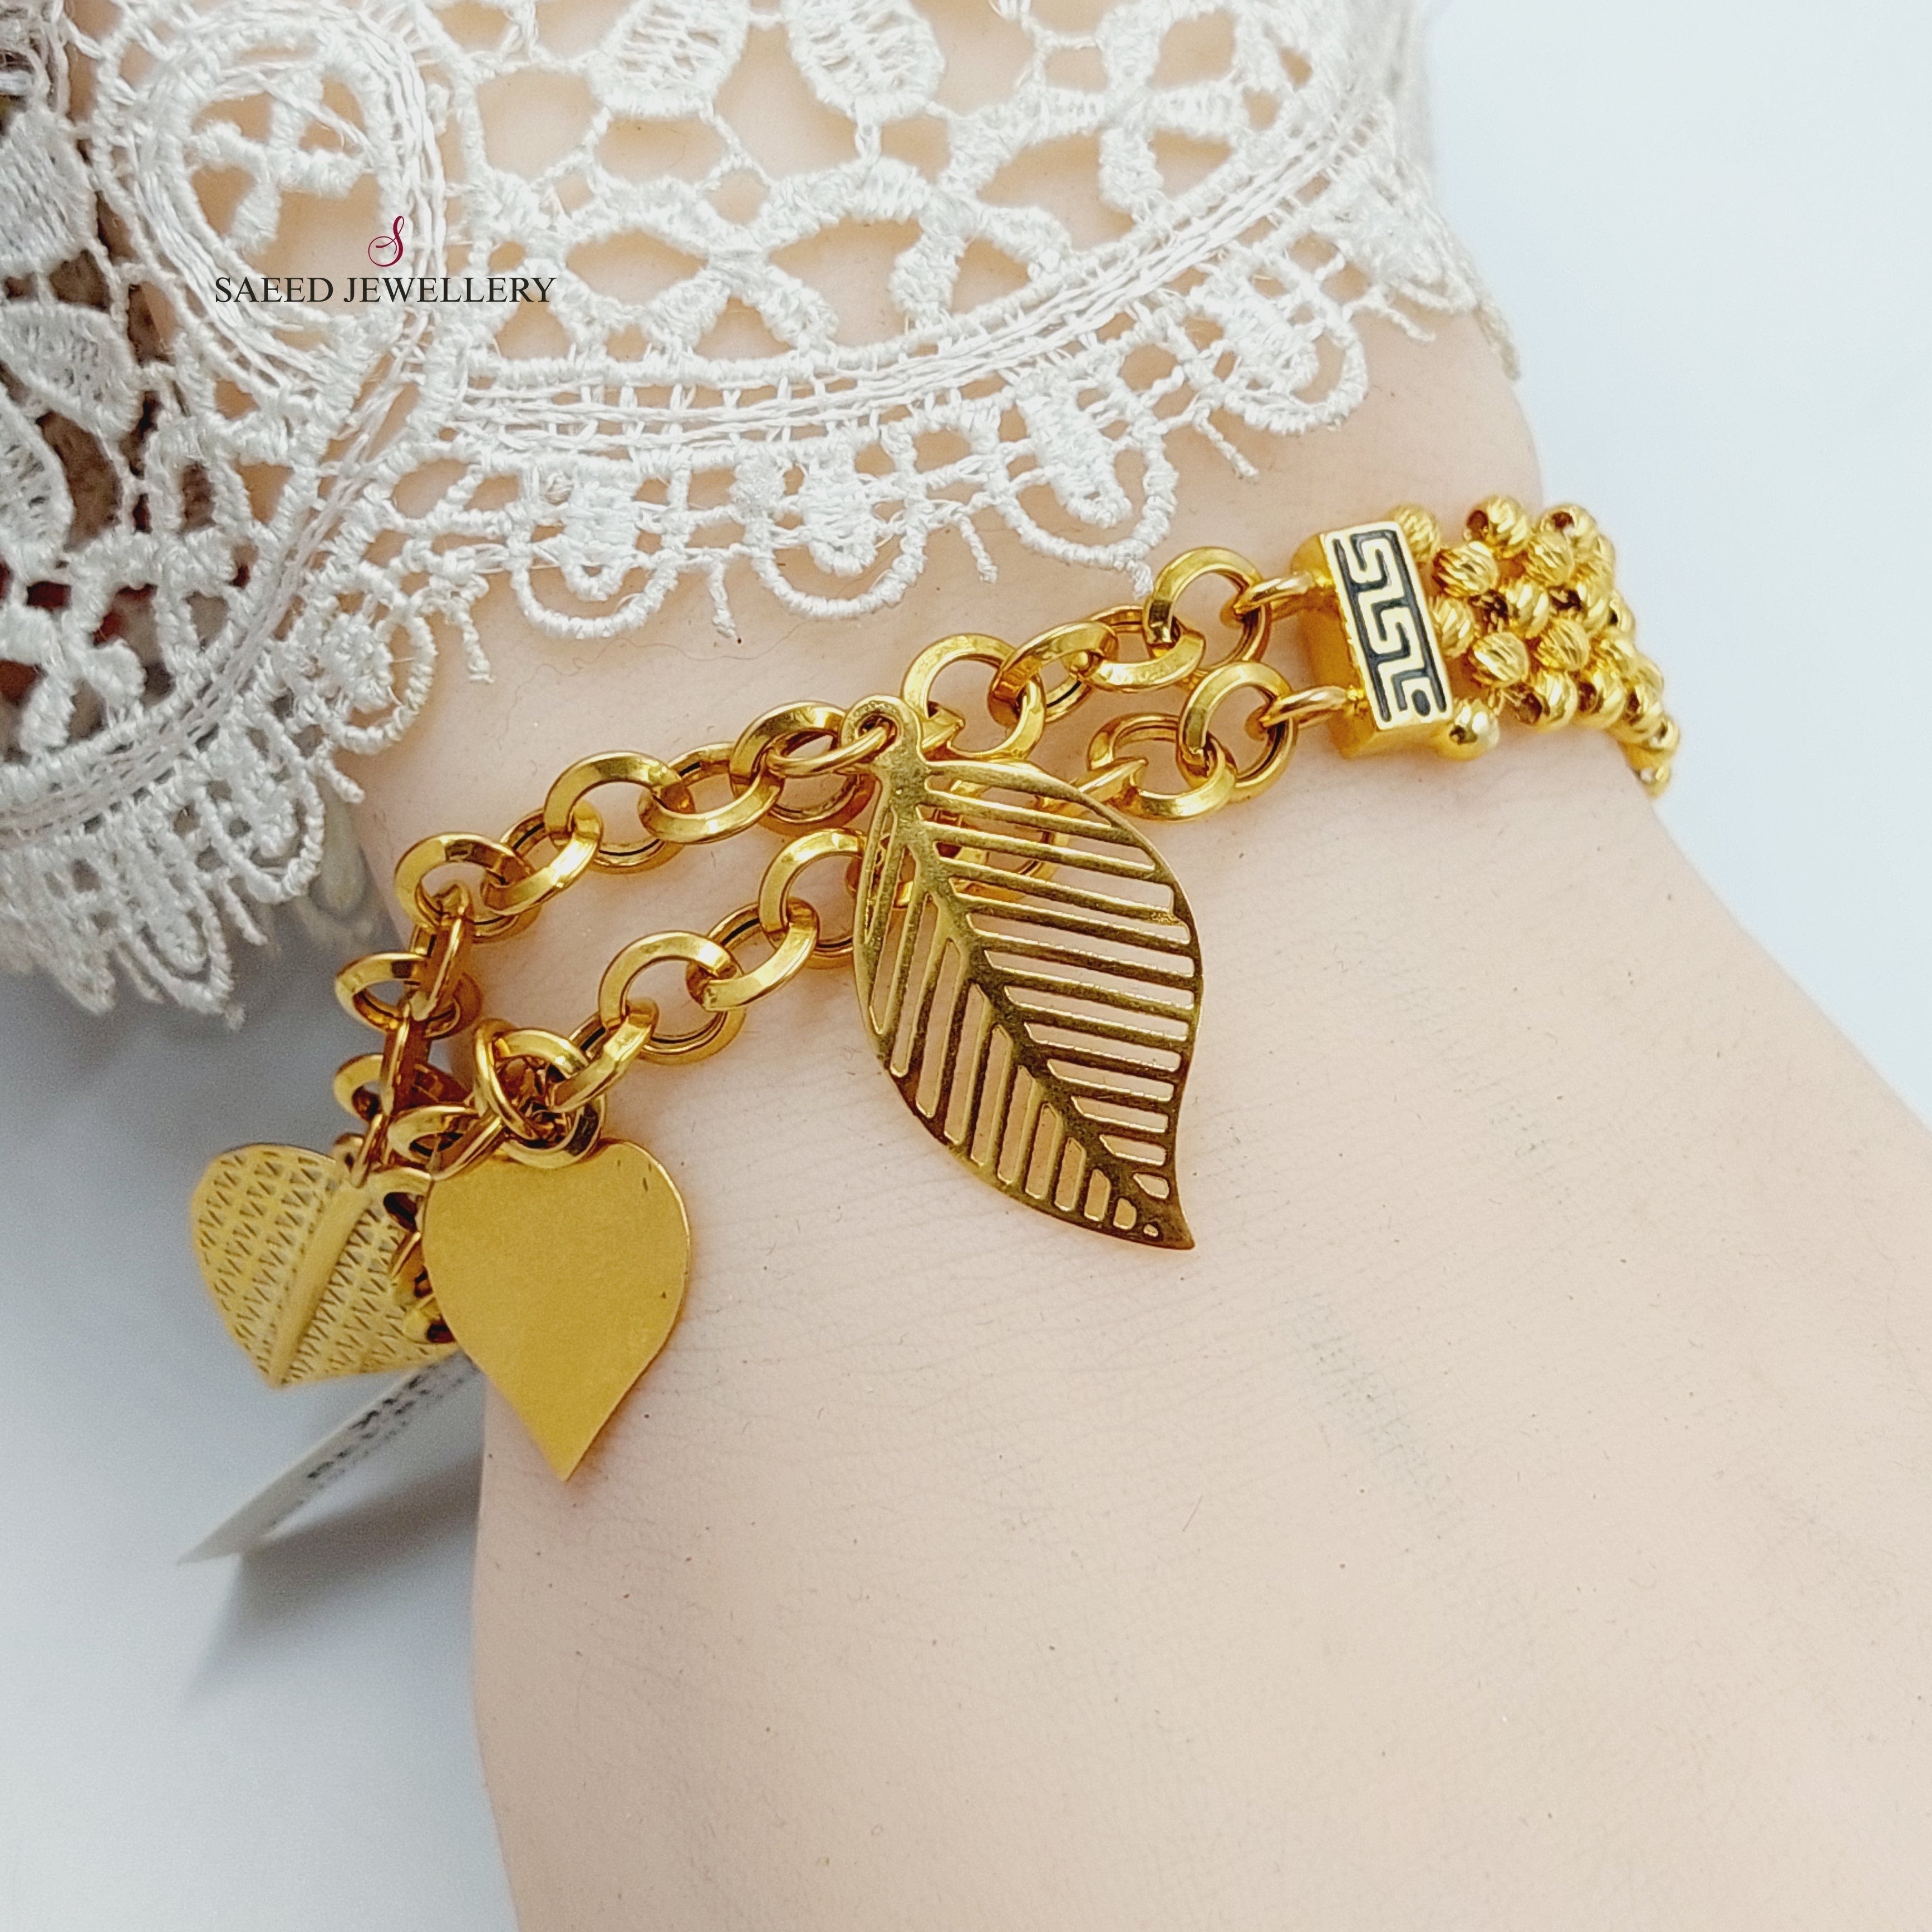 21K Gold Enameled Dandash Bracelet by Saeed Jewelry - Image 7